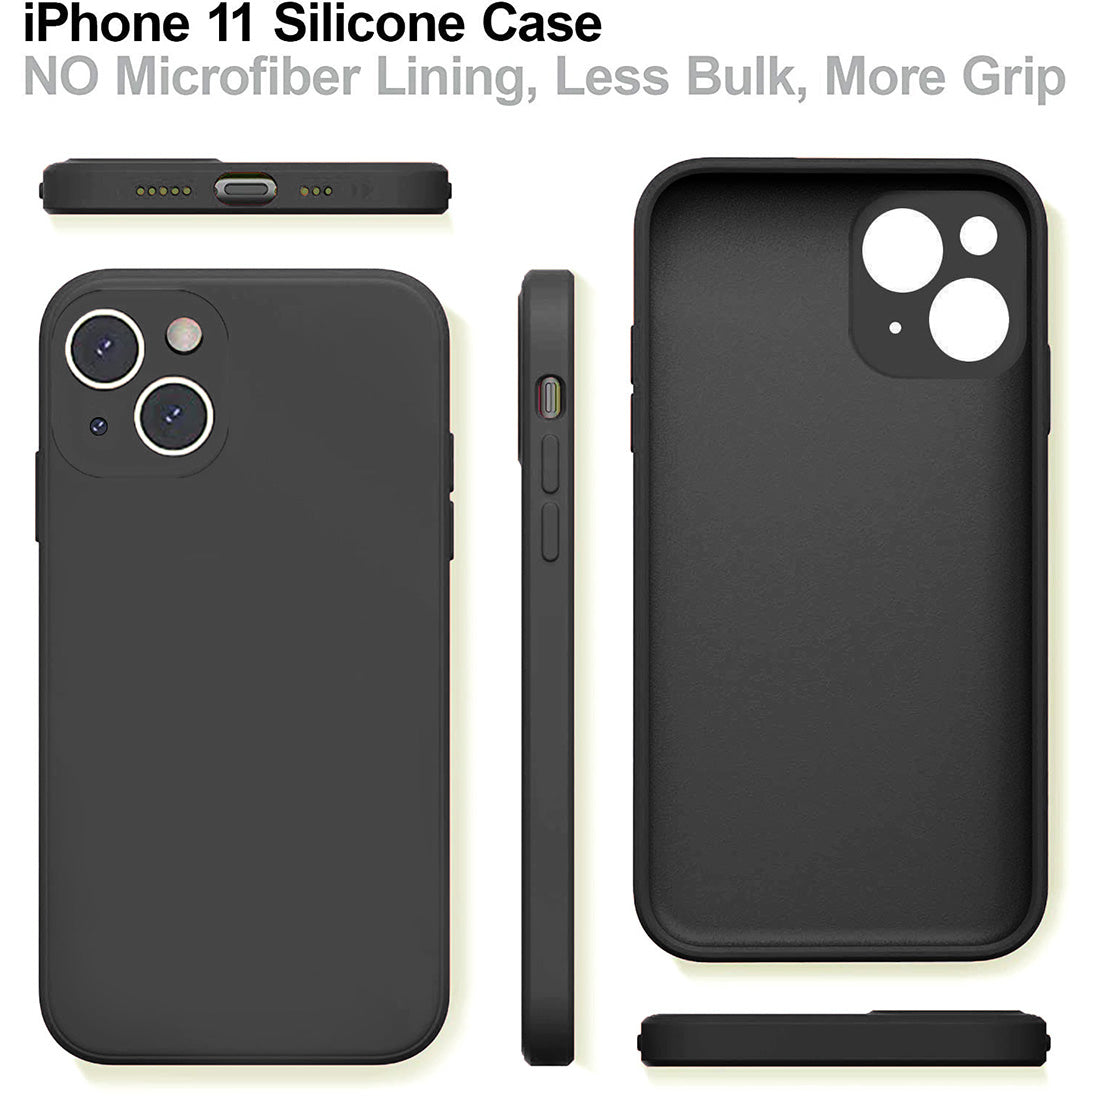 Liquid Silicone Case for Apple iPhone 13 Mini